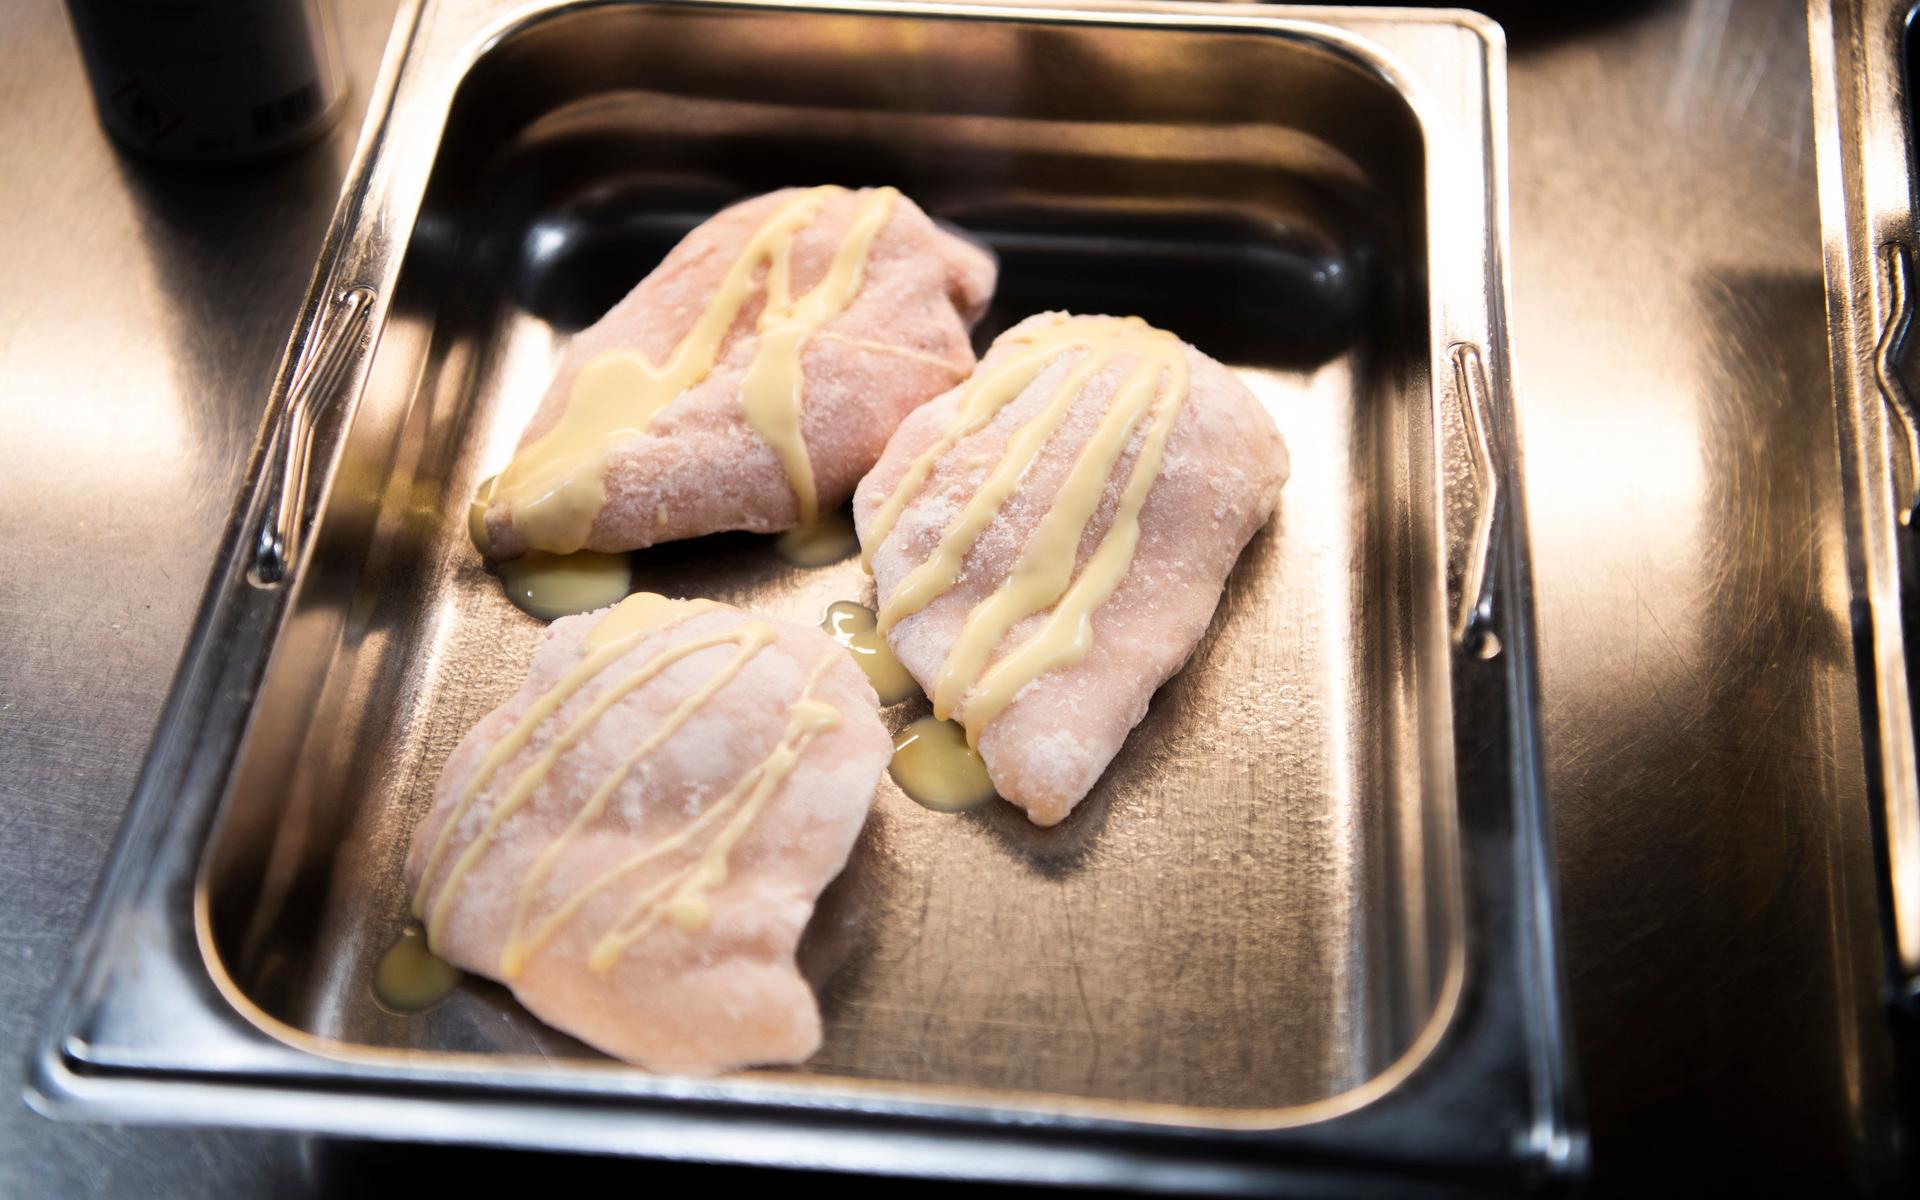 På dagens meny finns bland annat ugnsbakad kycklinglårfilé. Det tillagas i stora mängder på en gång, men också i mindre varianter till patienter med specialkost.